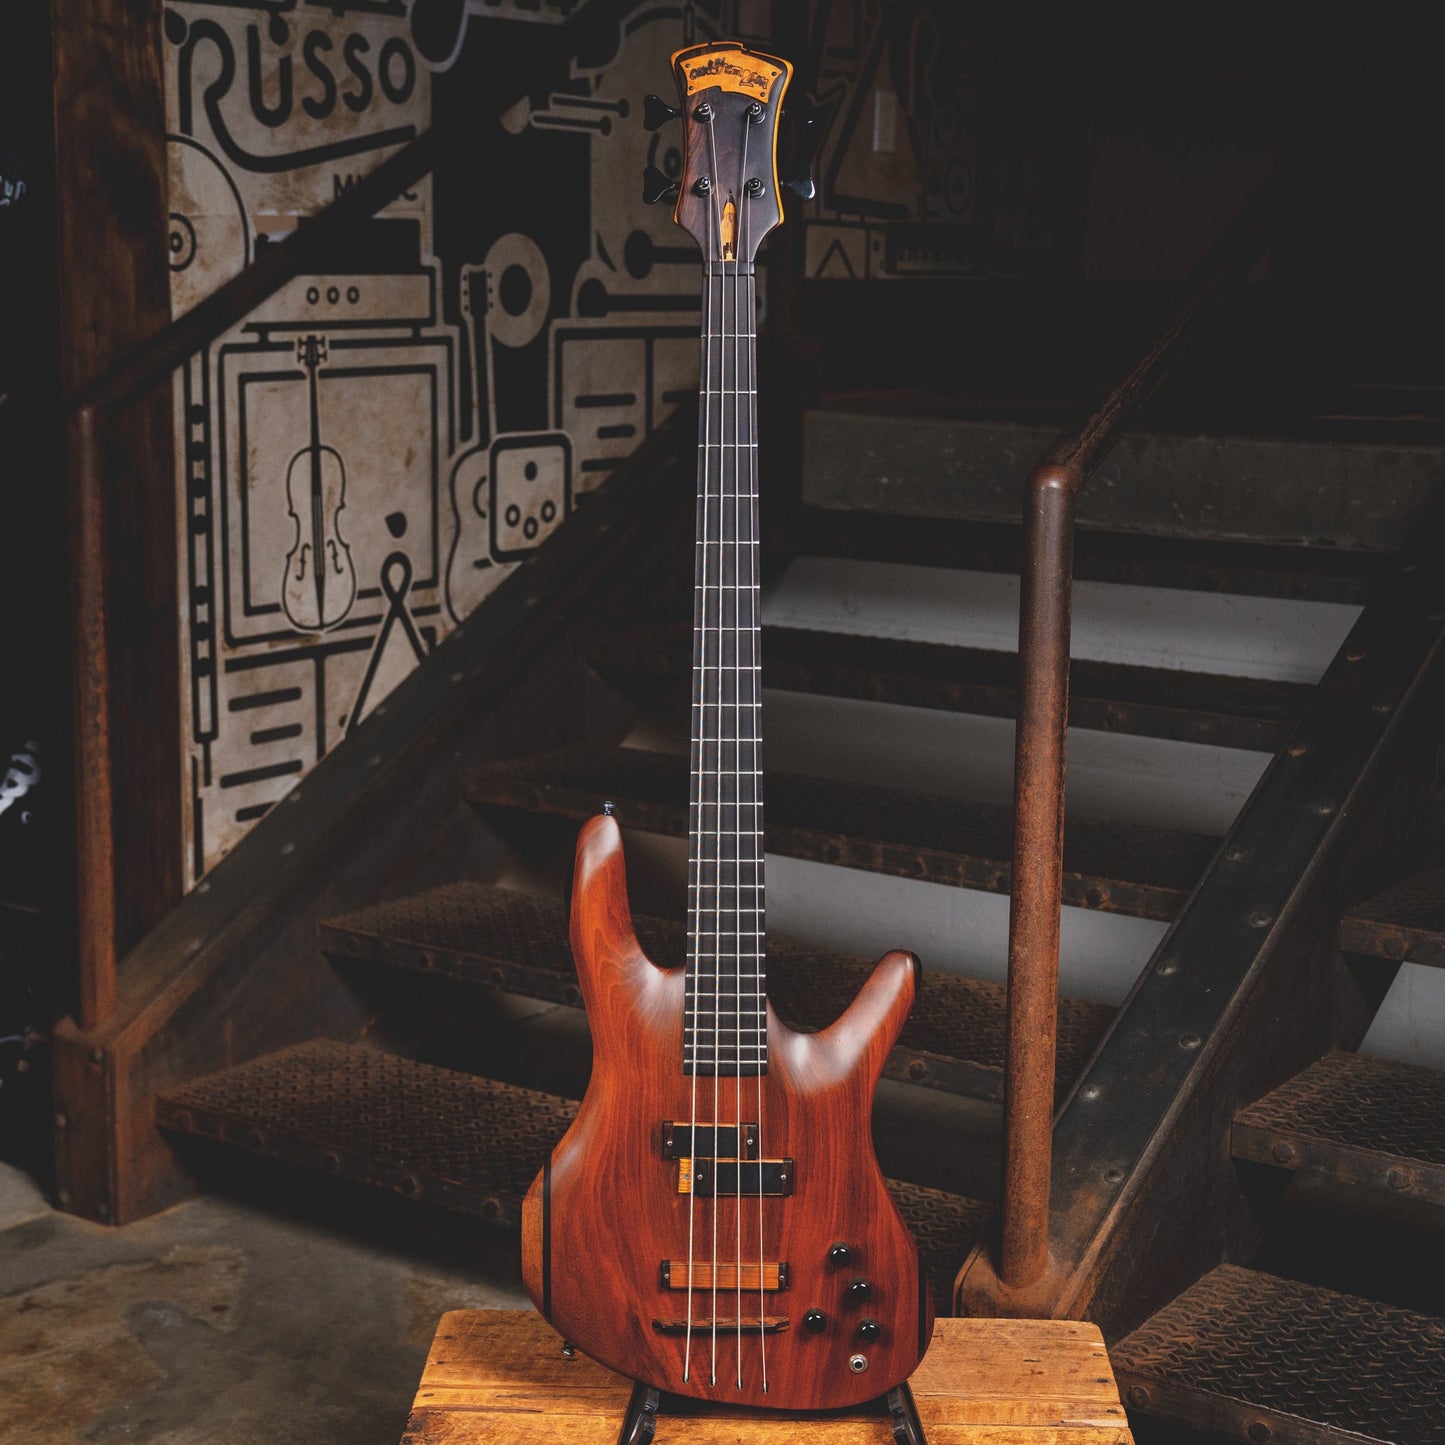 1991 Carl Thompson Custom 4 String Bass Guitar w/ OGB - Used